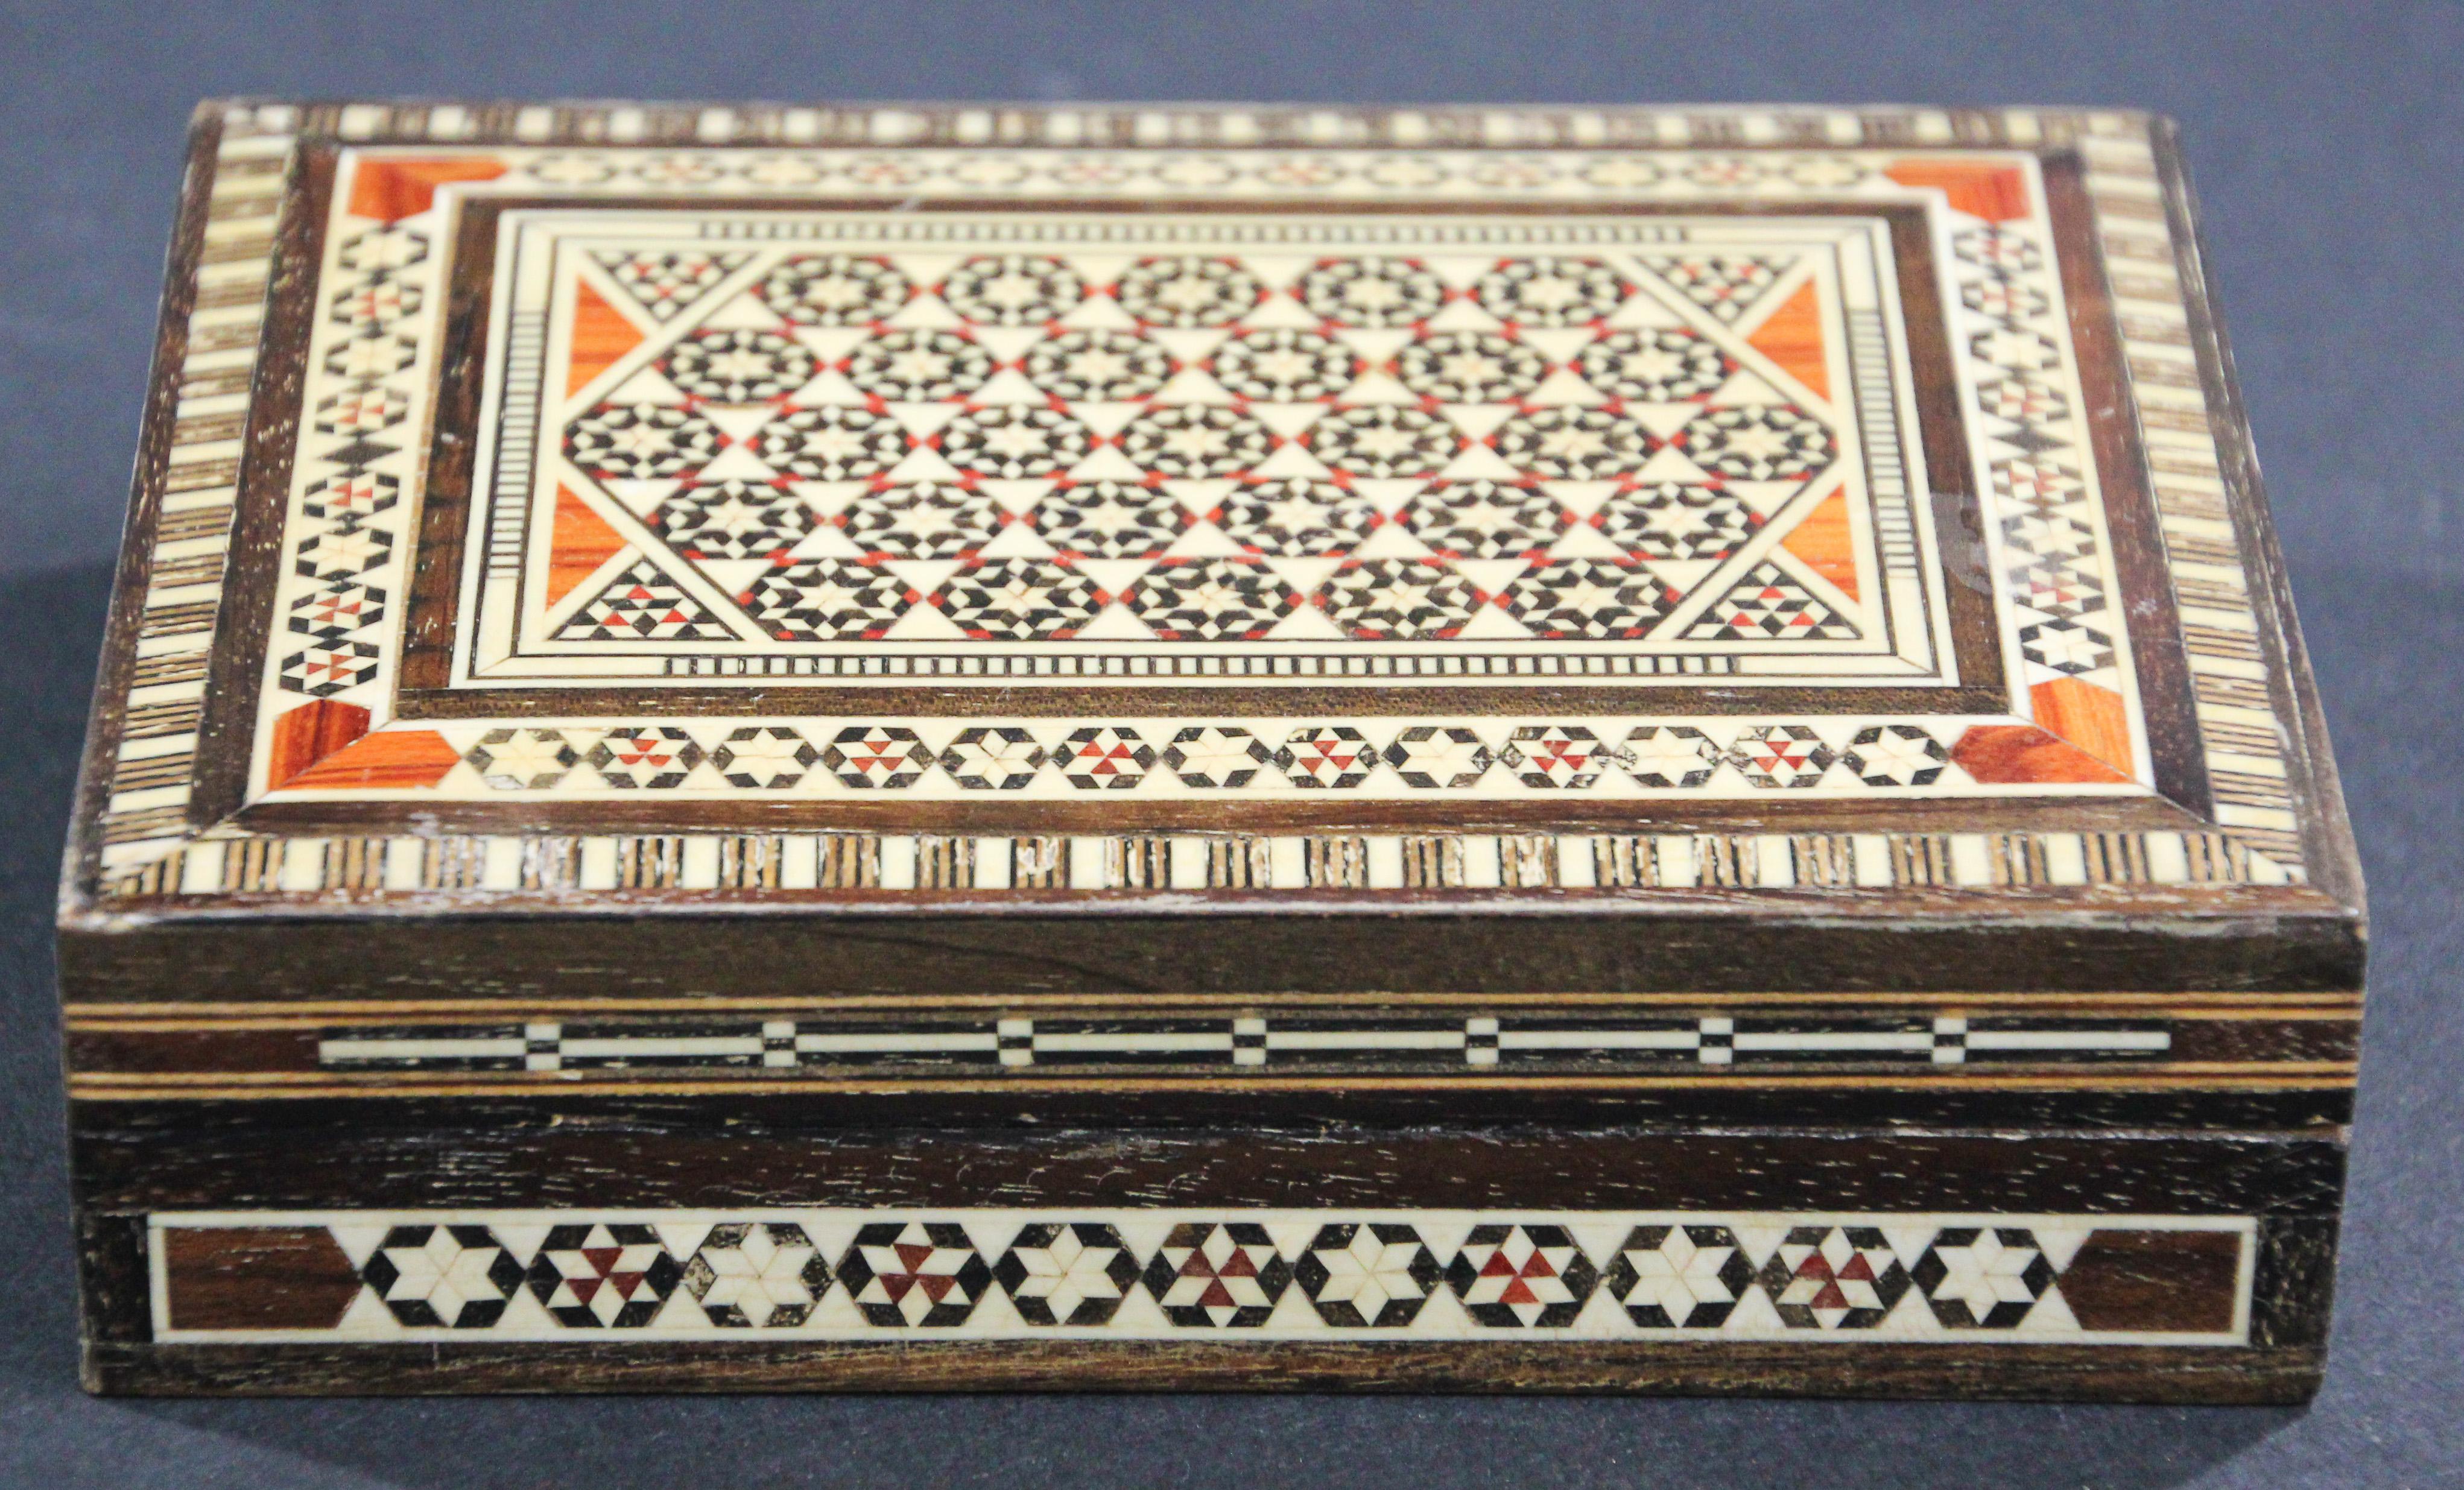 Exquisite handgefertigte nahöstliche Mosaikeinlegearbeiten in einer Schatulle aus Walnussholz.
Vintage-Schmuckkästchen mit maurischen Motiven, die sorgfältig mit Mosaikeinlegearbeiten, Perlmutt und Obsthölzern eingelegt wurden.
Libanesische